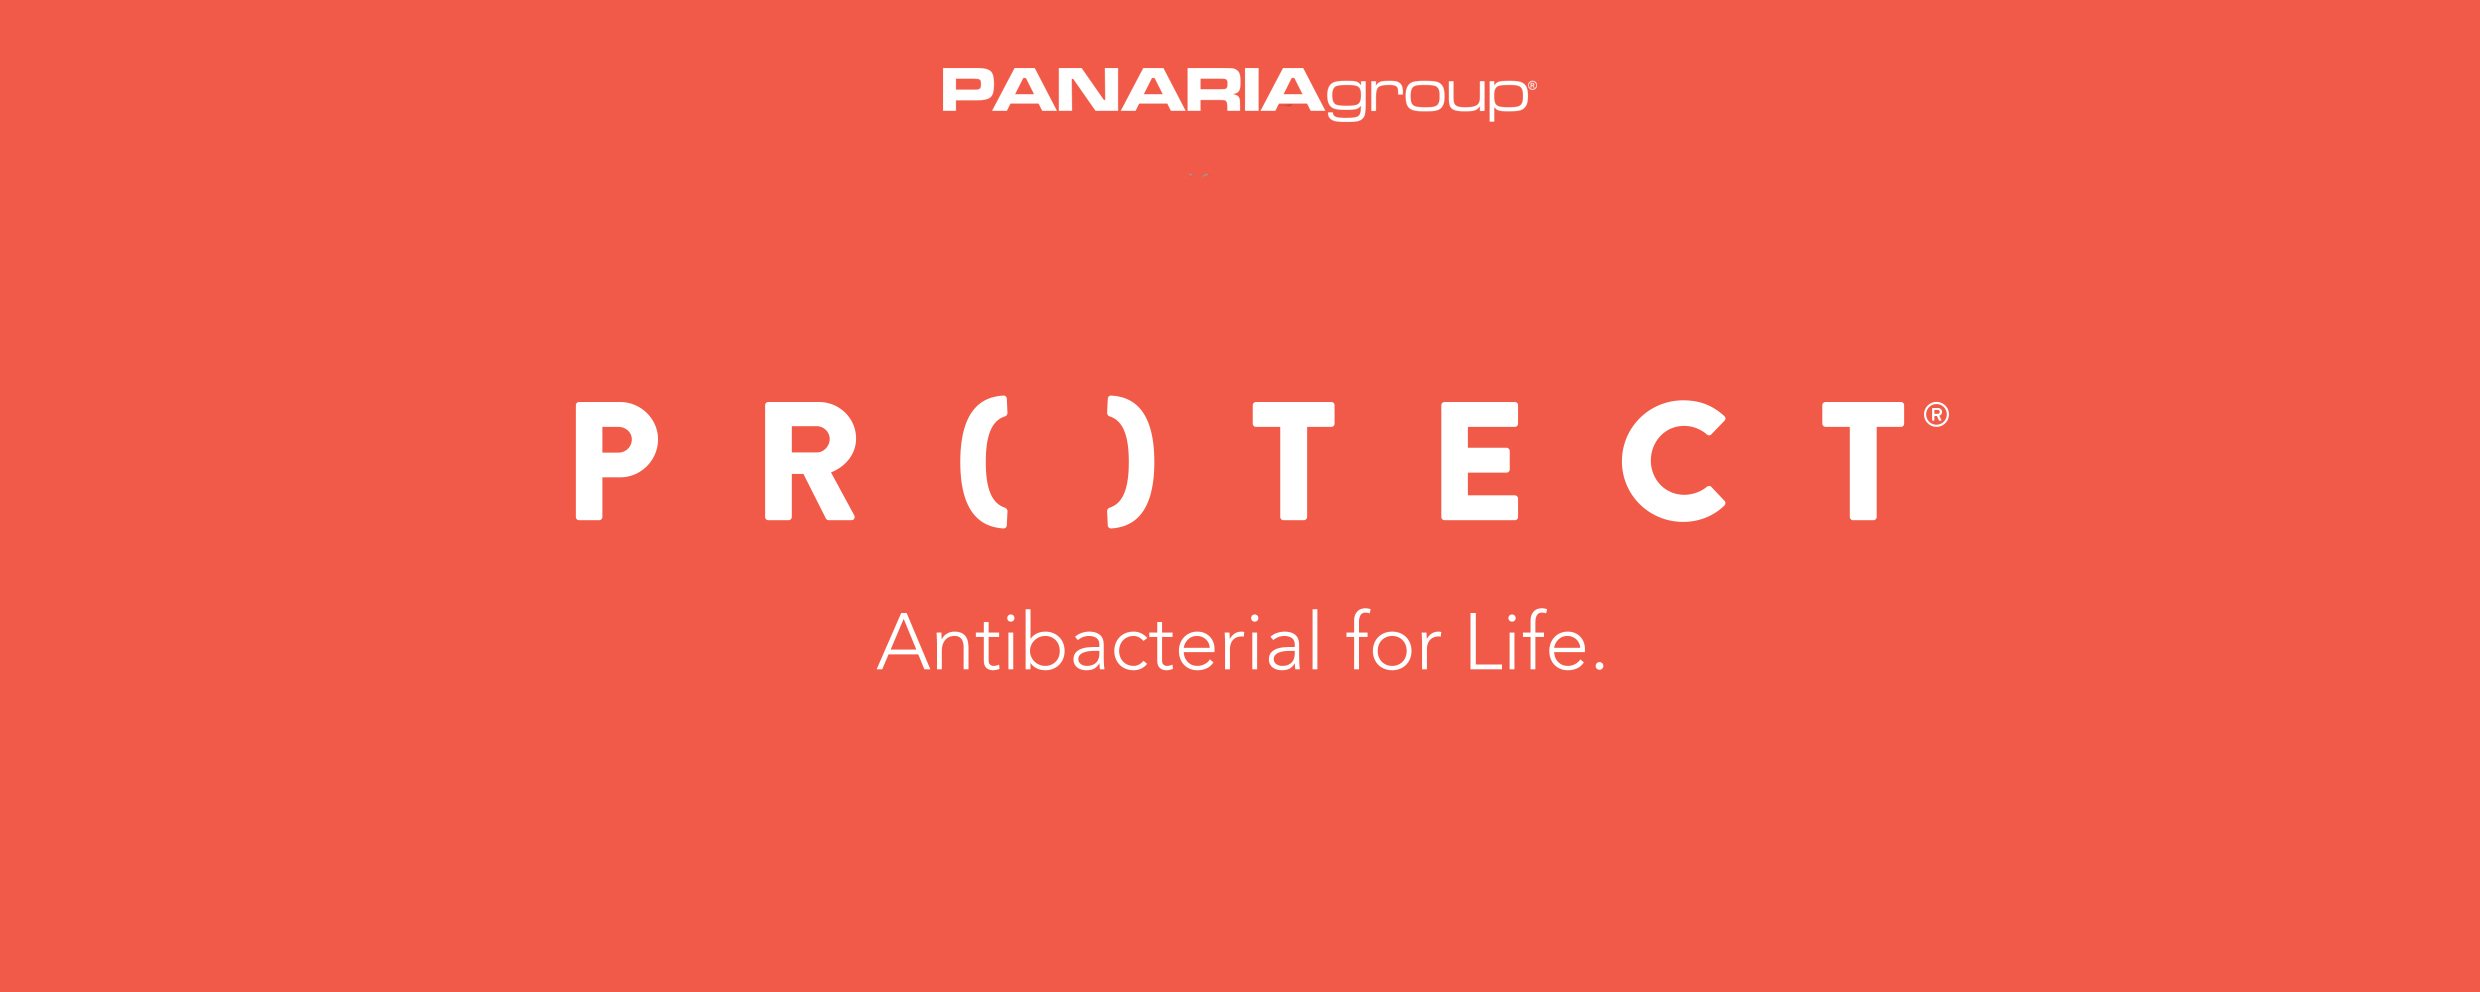 Panaria introduces PROTECT®